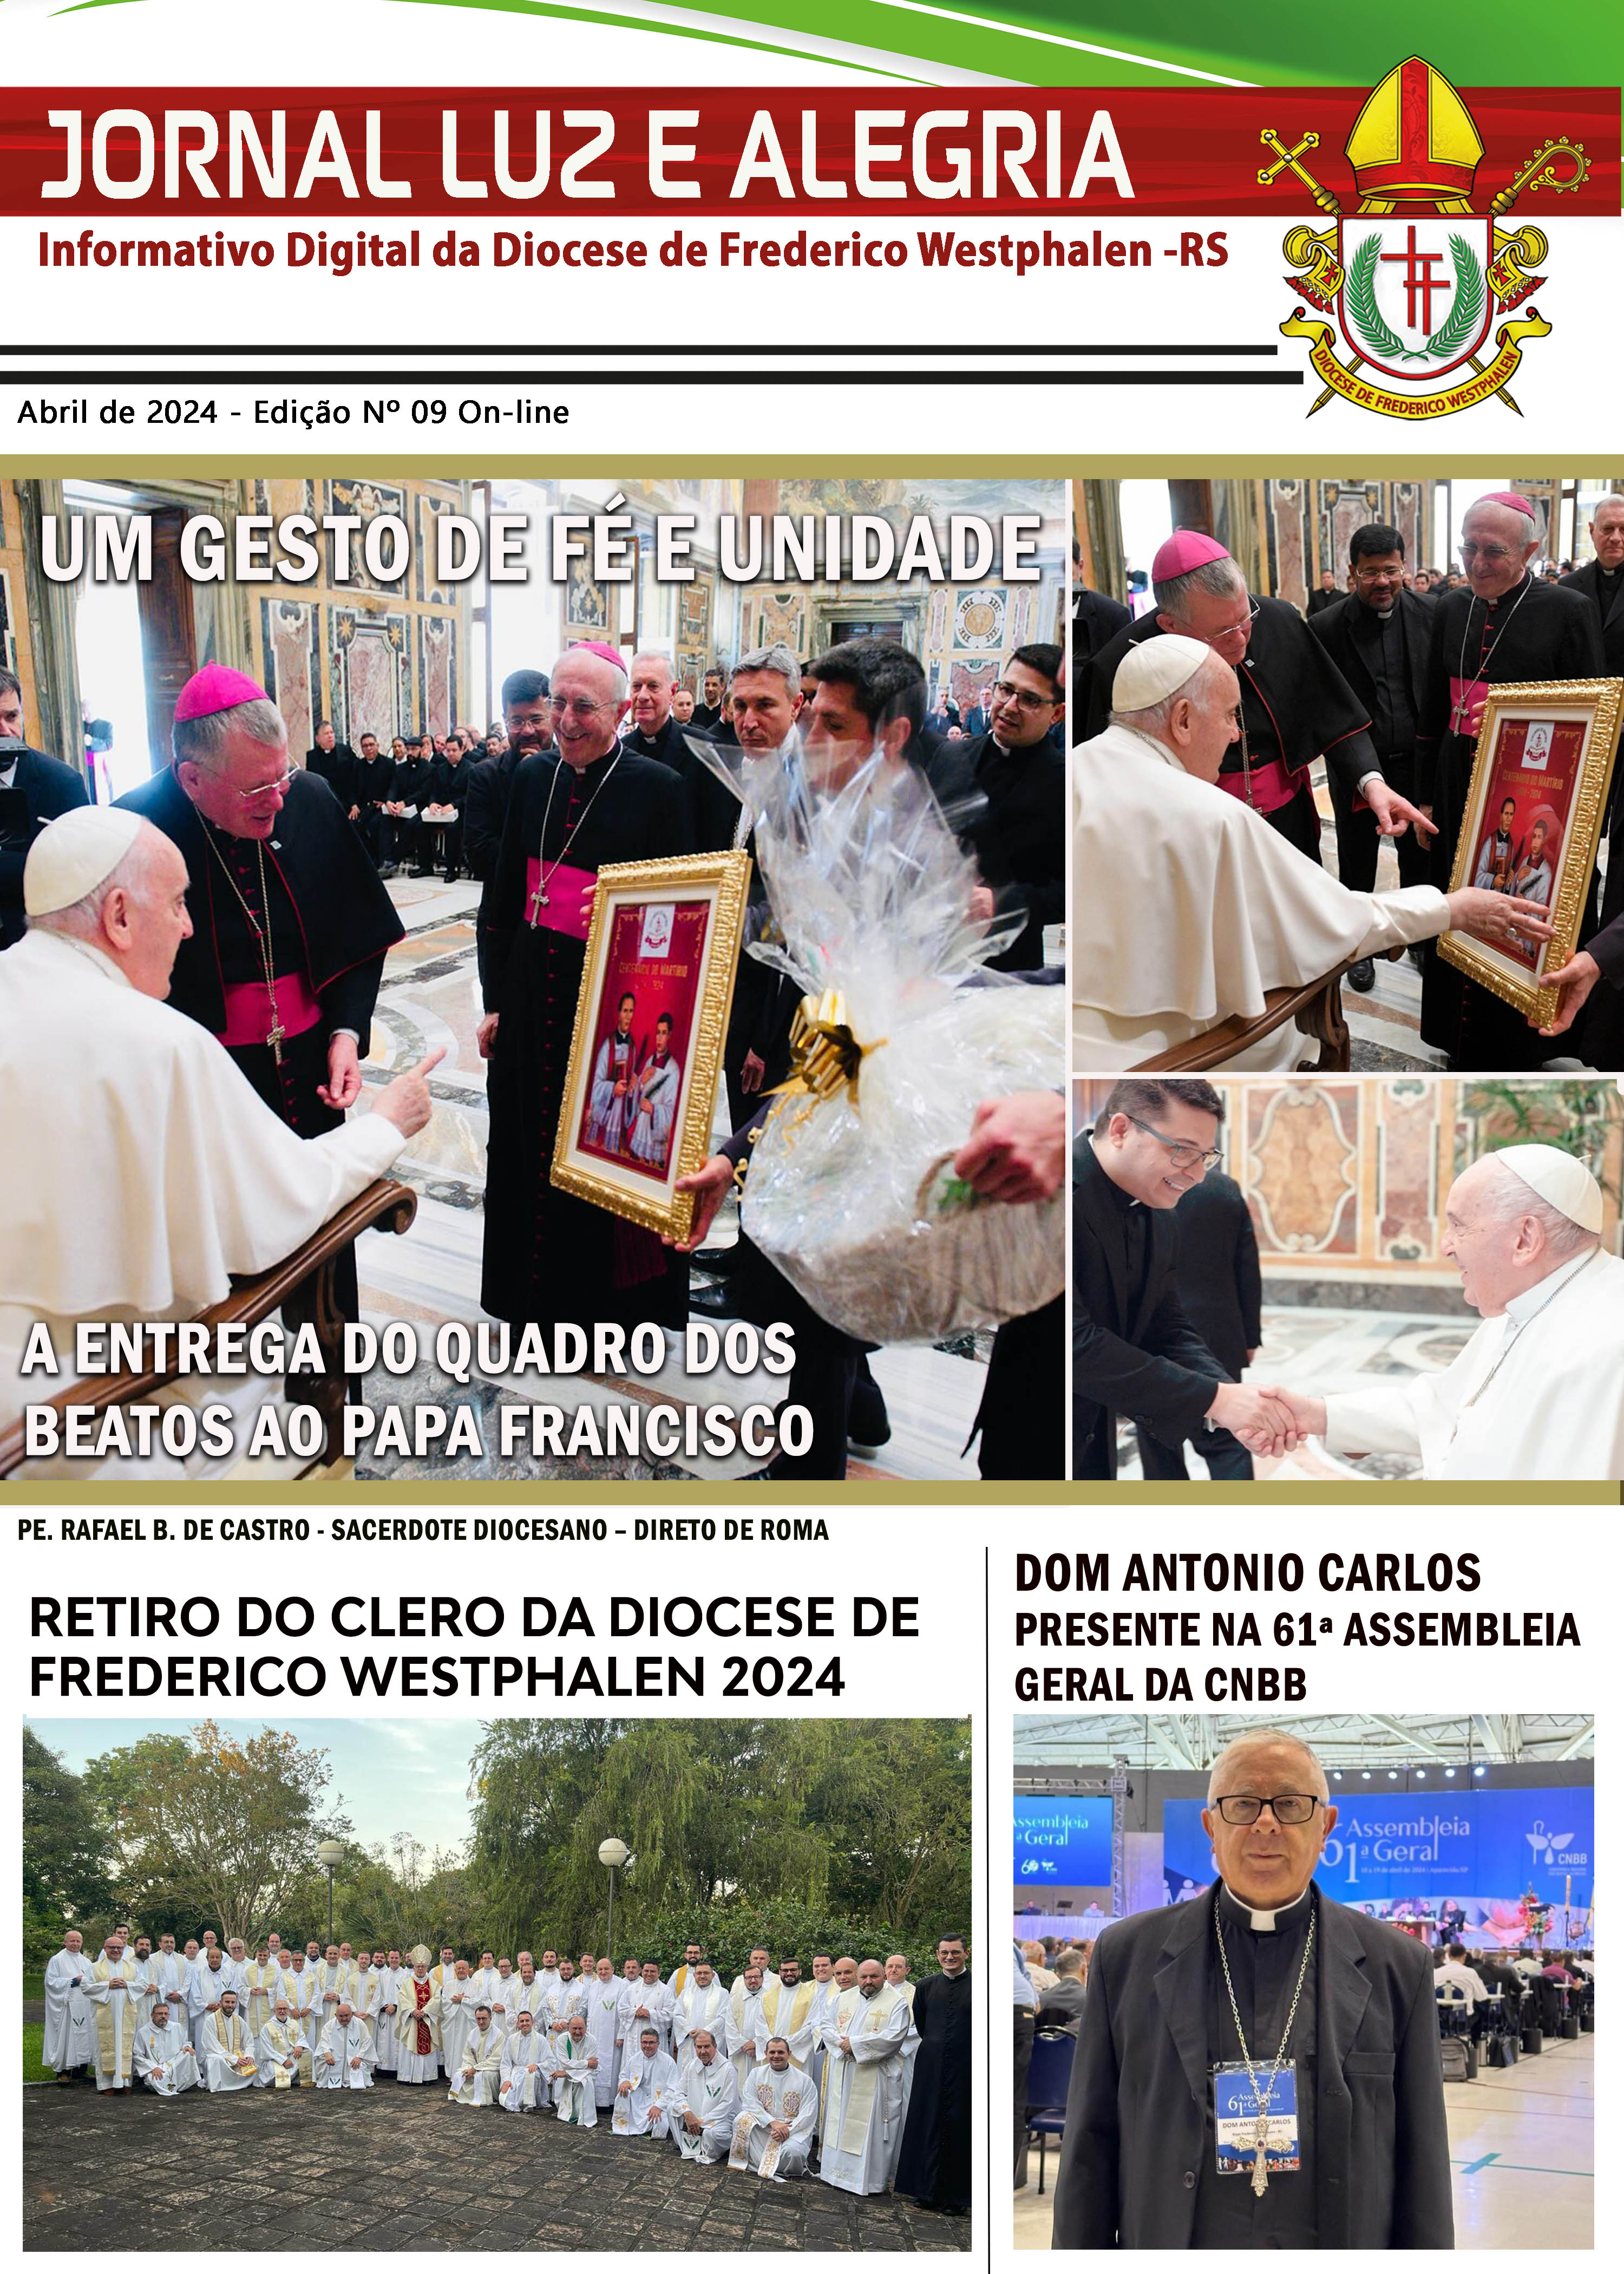 Capa Jornal Luz e Alegria - 9ª Edição ON LINE - ABRIL 2024